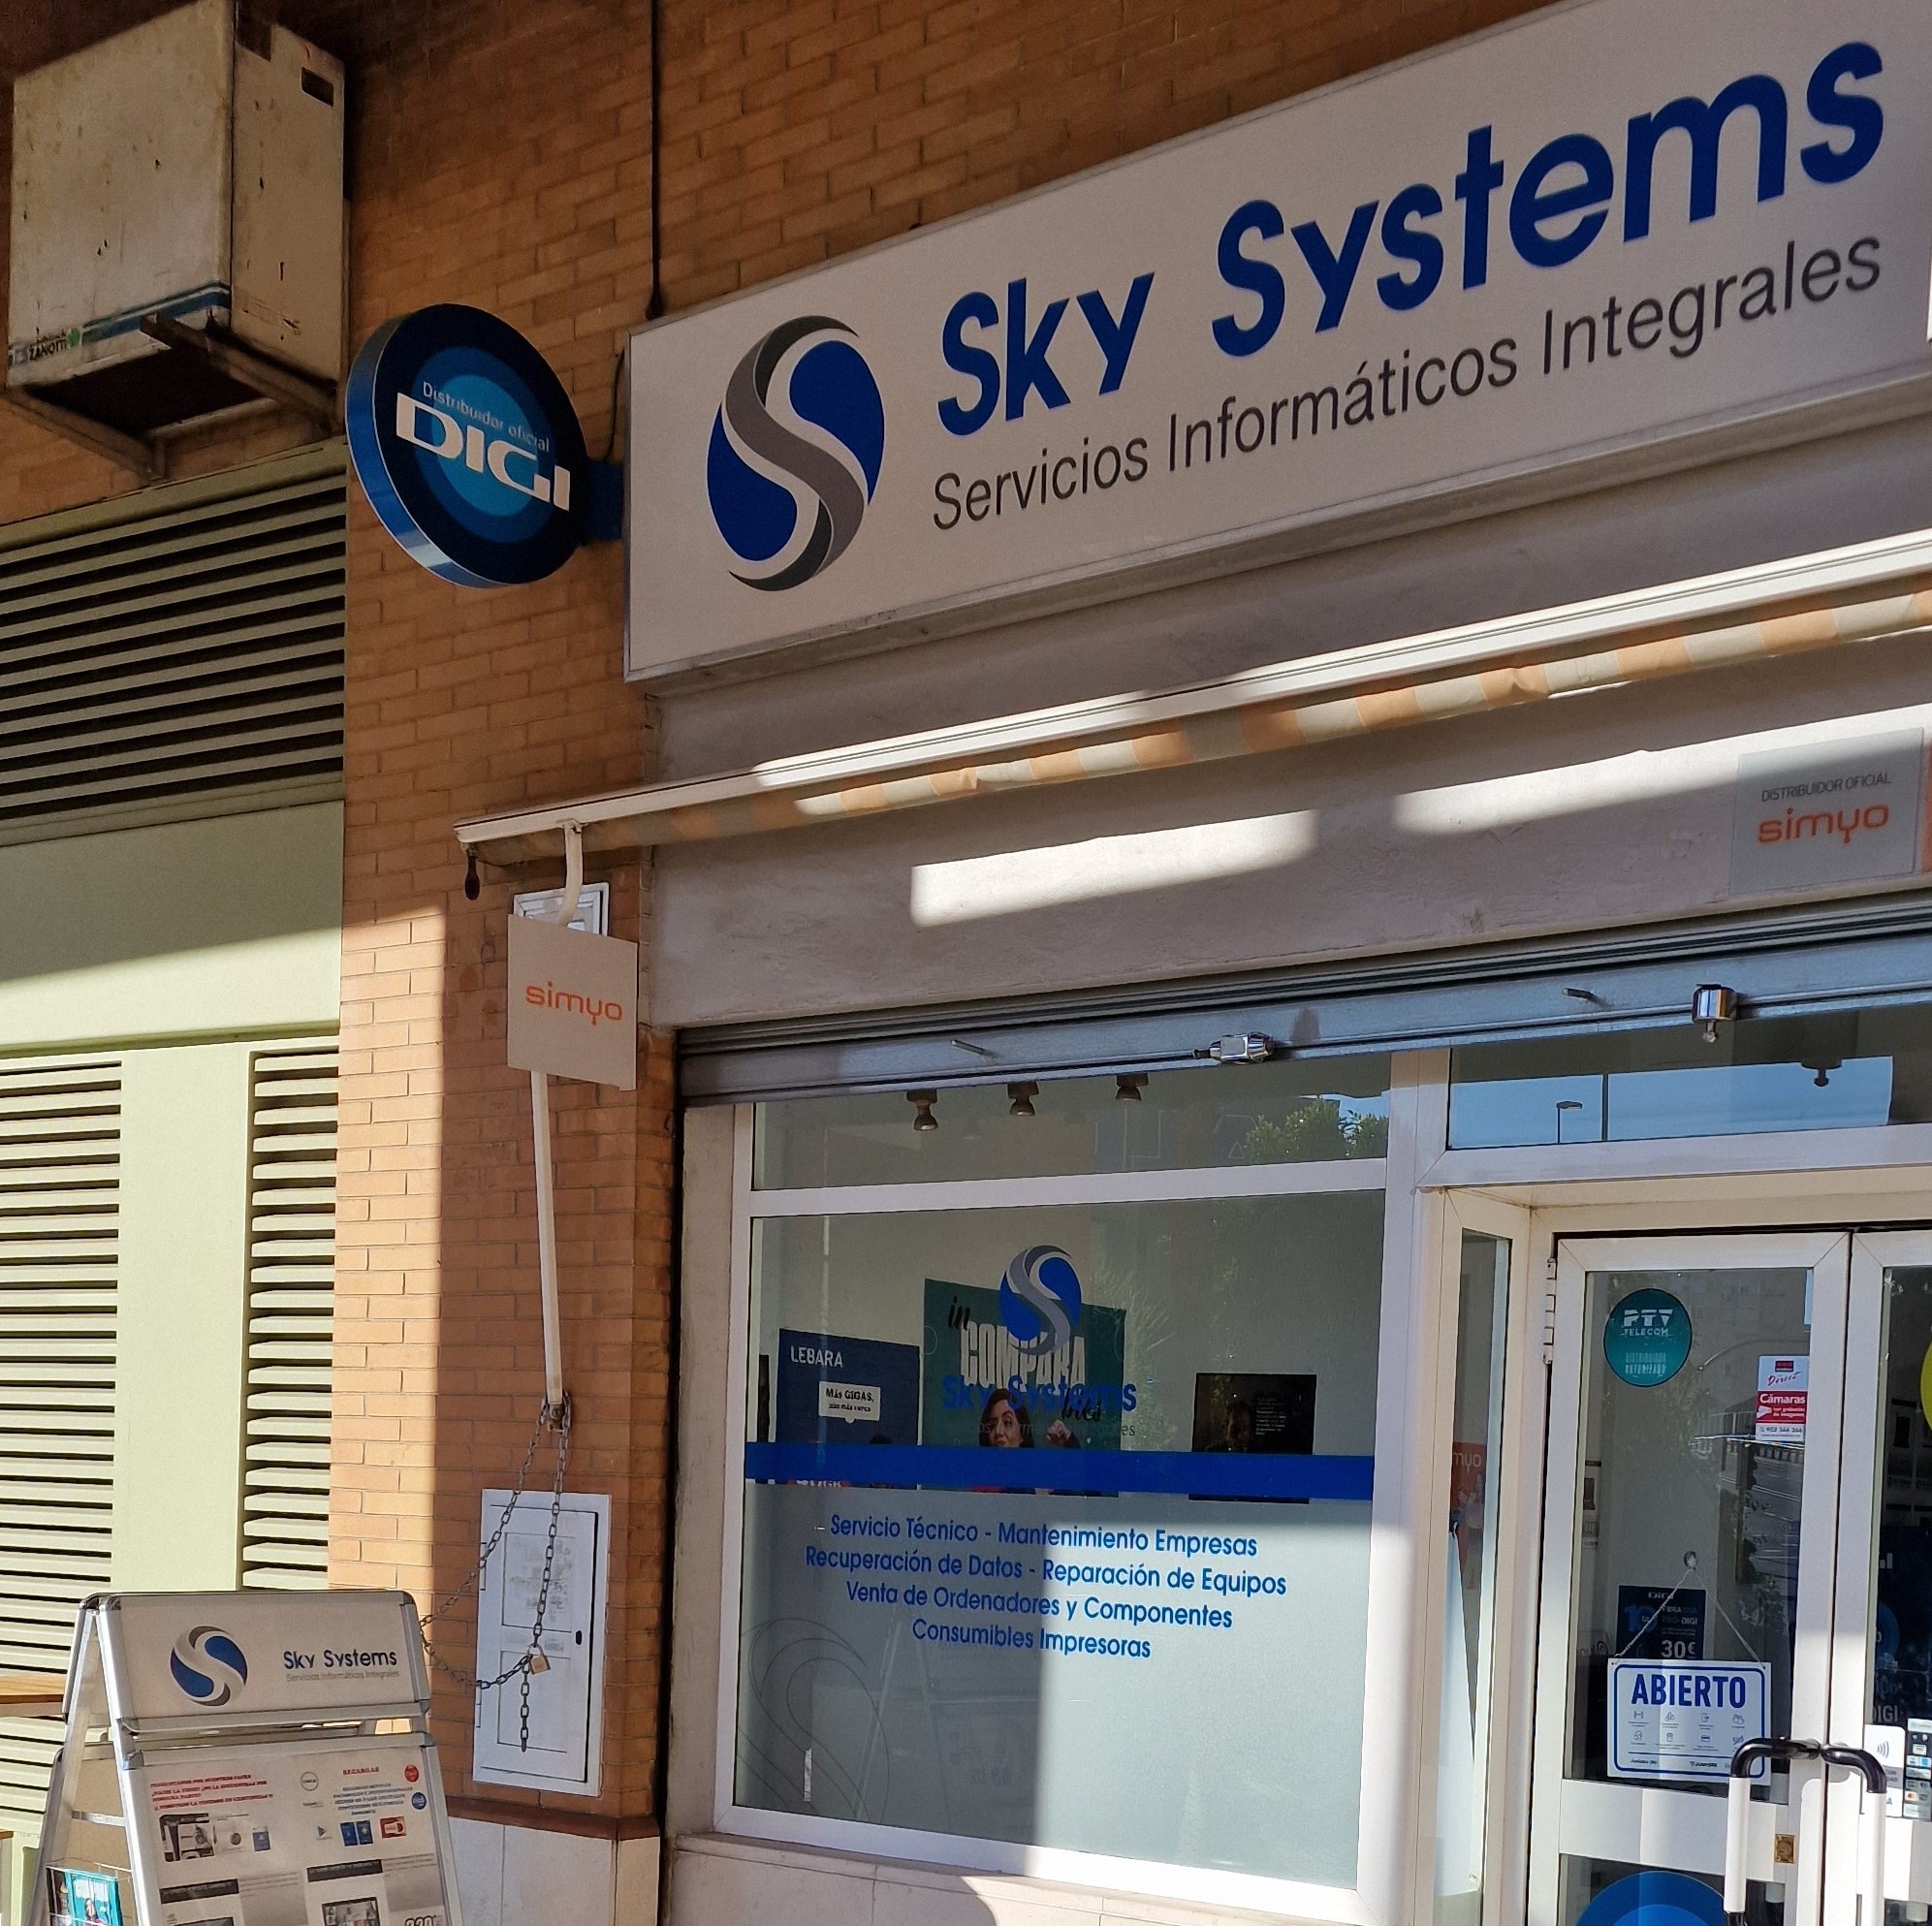 Images Sky Systems Servicios Informáticos Integrales